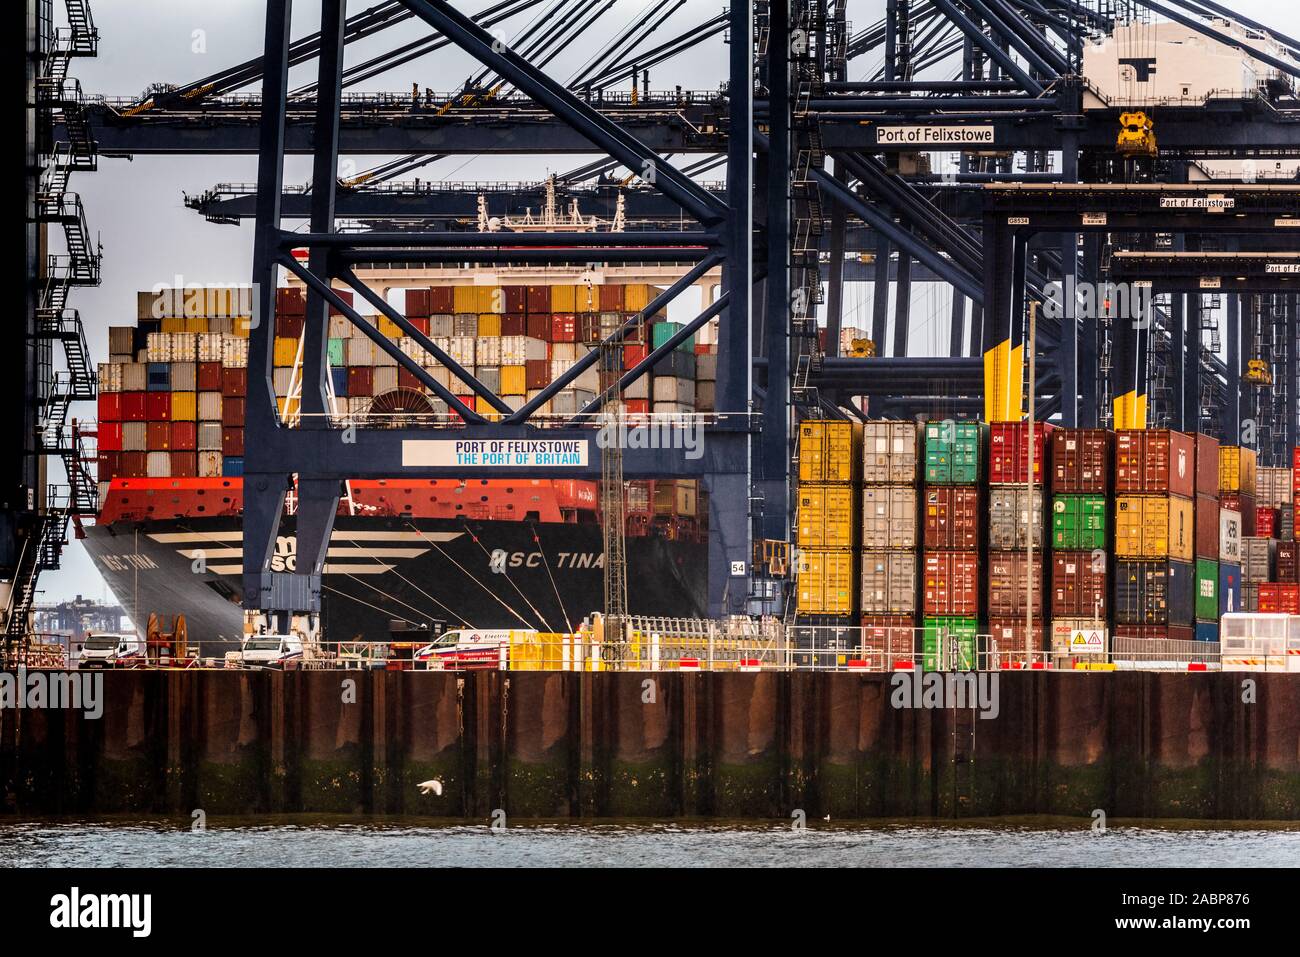 Britische Docks - Warenhandel UK-Container entladen werden vom MSC Tina Containerschiff in Felixstowe Containerhafen Stockfoto